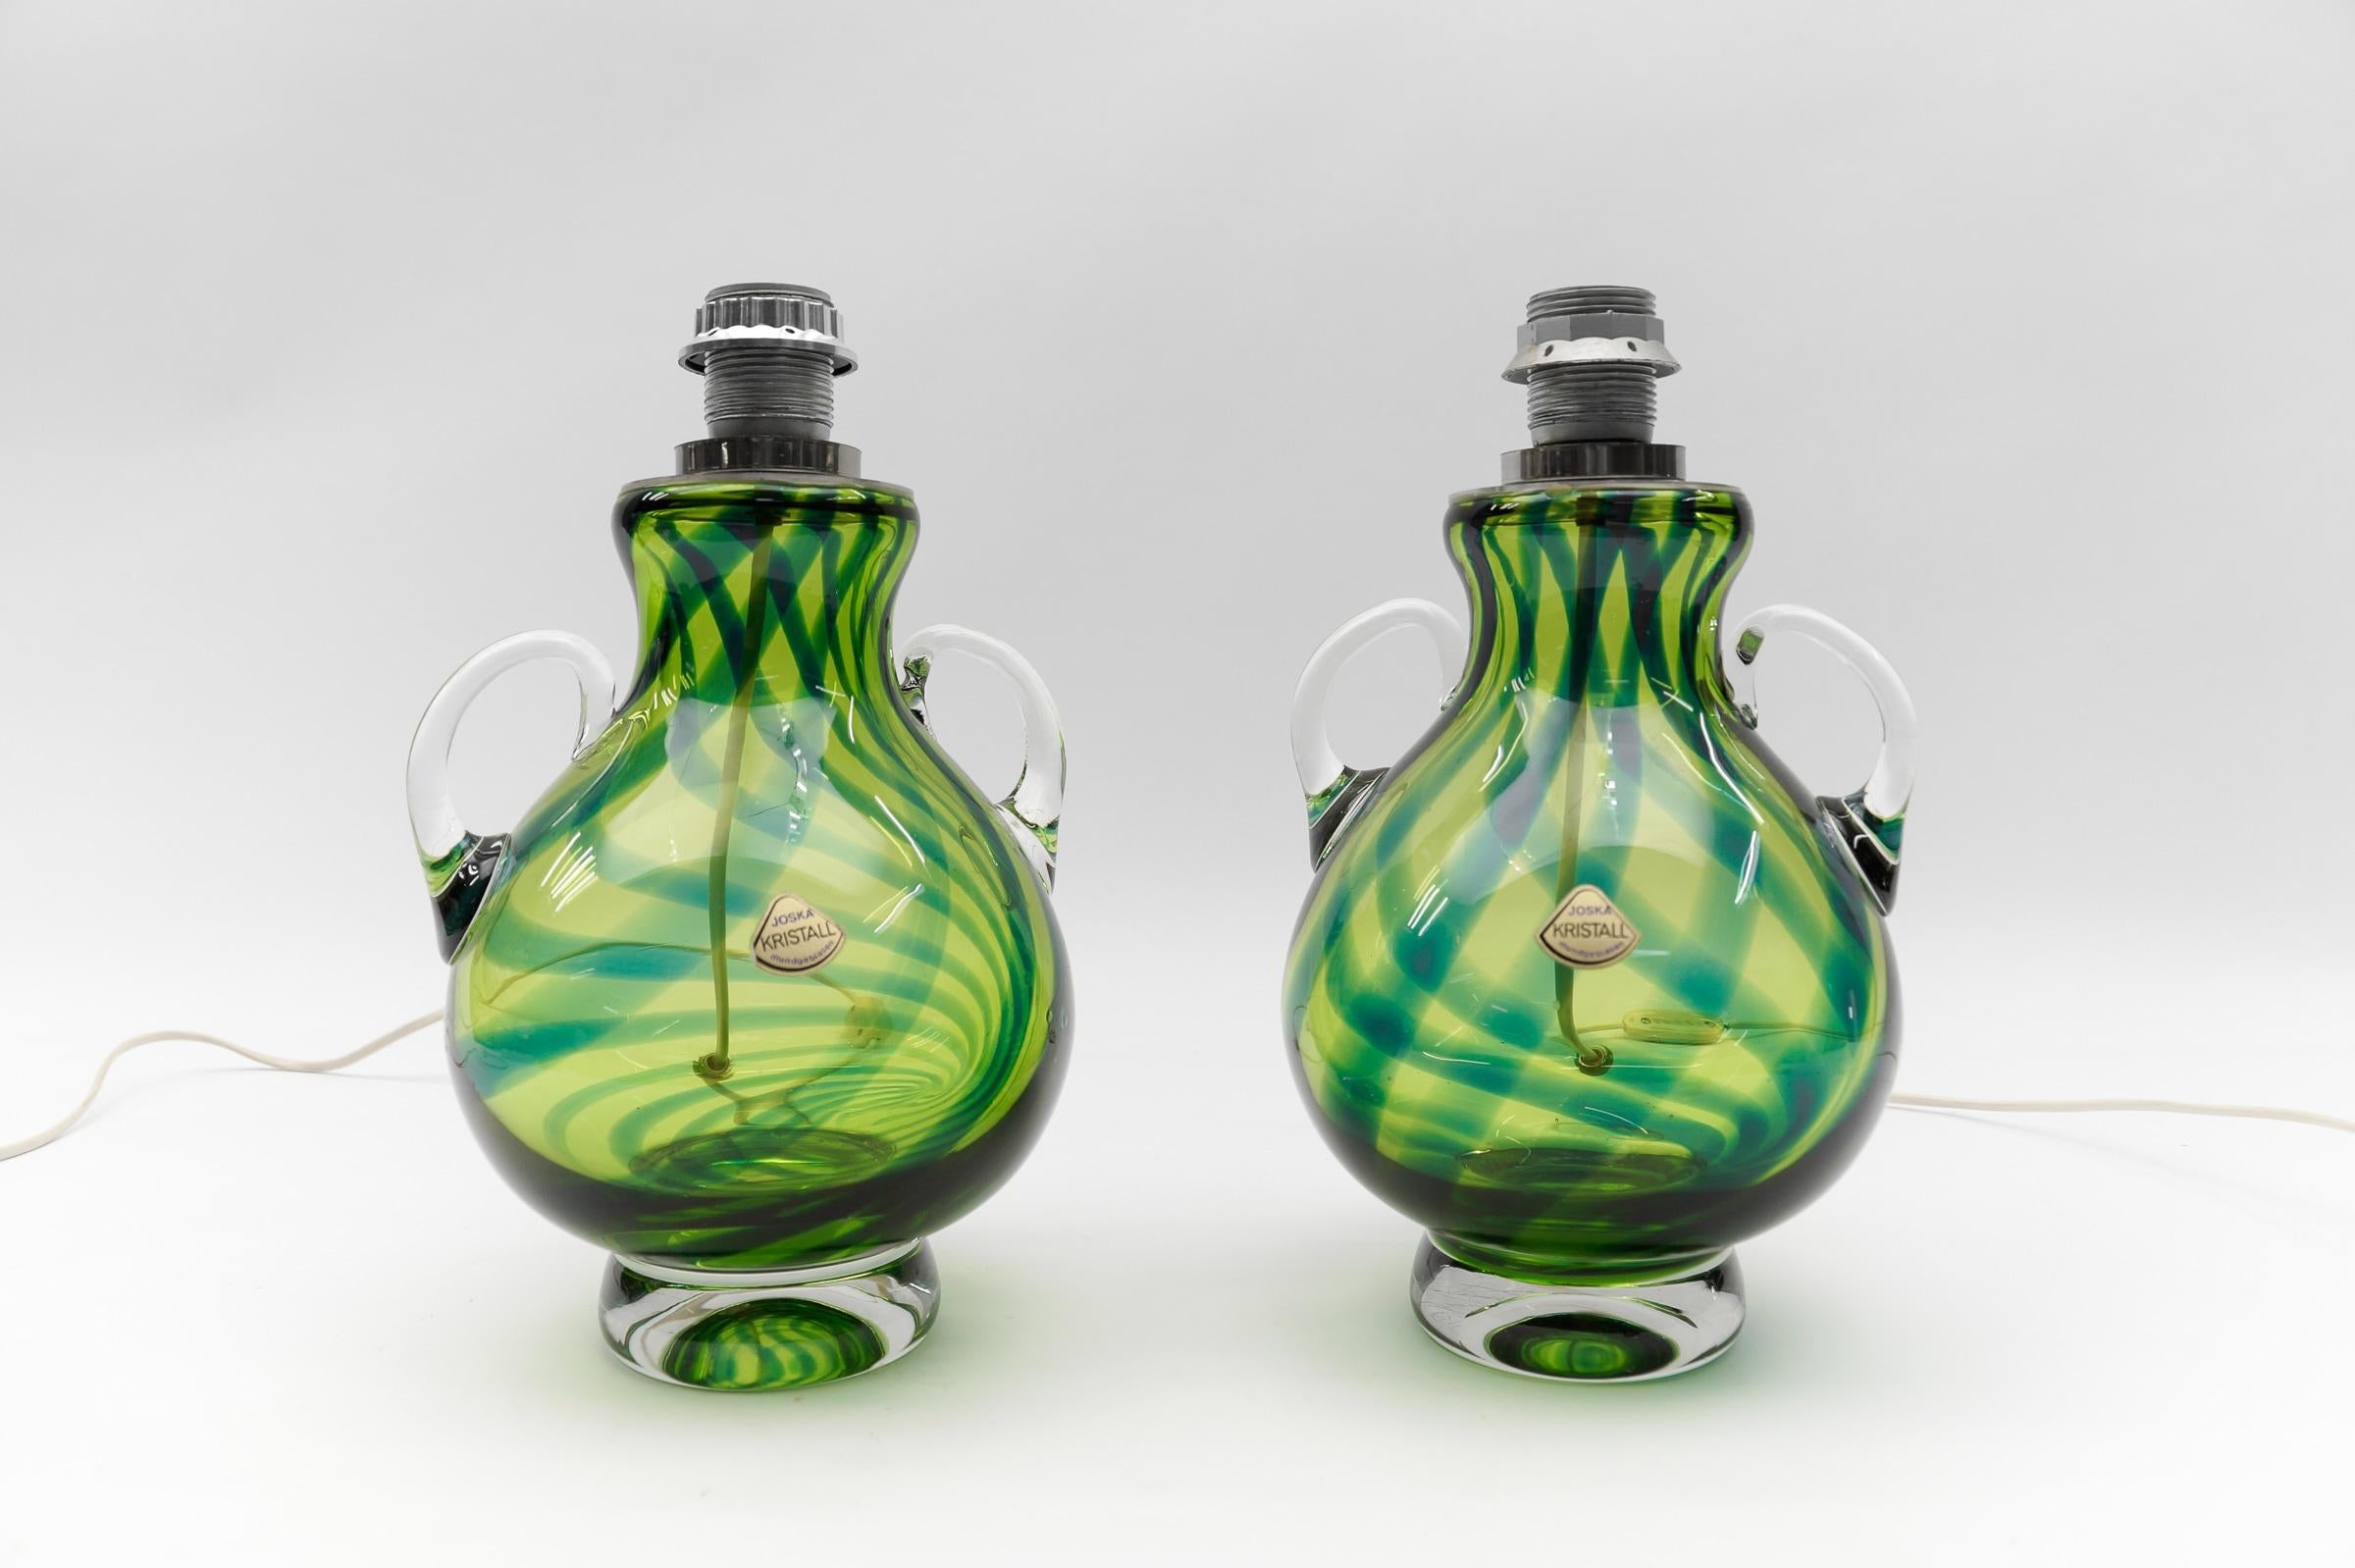 Paar schwere mundgeblasene Mid-Century-Modern-Tischlampen aus Glas von Joska, Deutschland, 1970er Jahre

Abmessungen
Durchmesser: 19 cm (7,48 Zoll)
Höhe: 34 cm (13.38 in.)

Die Lampen benötigen 1 x E27 / E26 Edison Schraube fit Glühbirne, ist